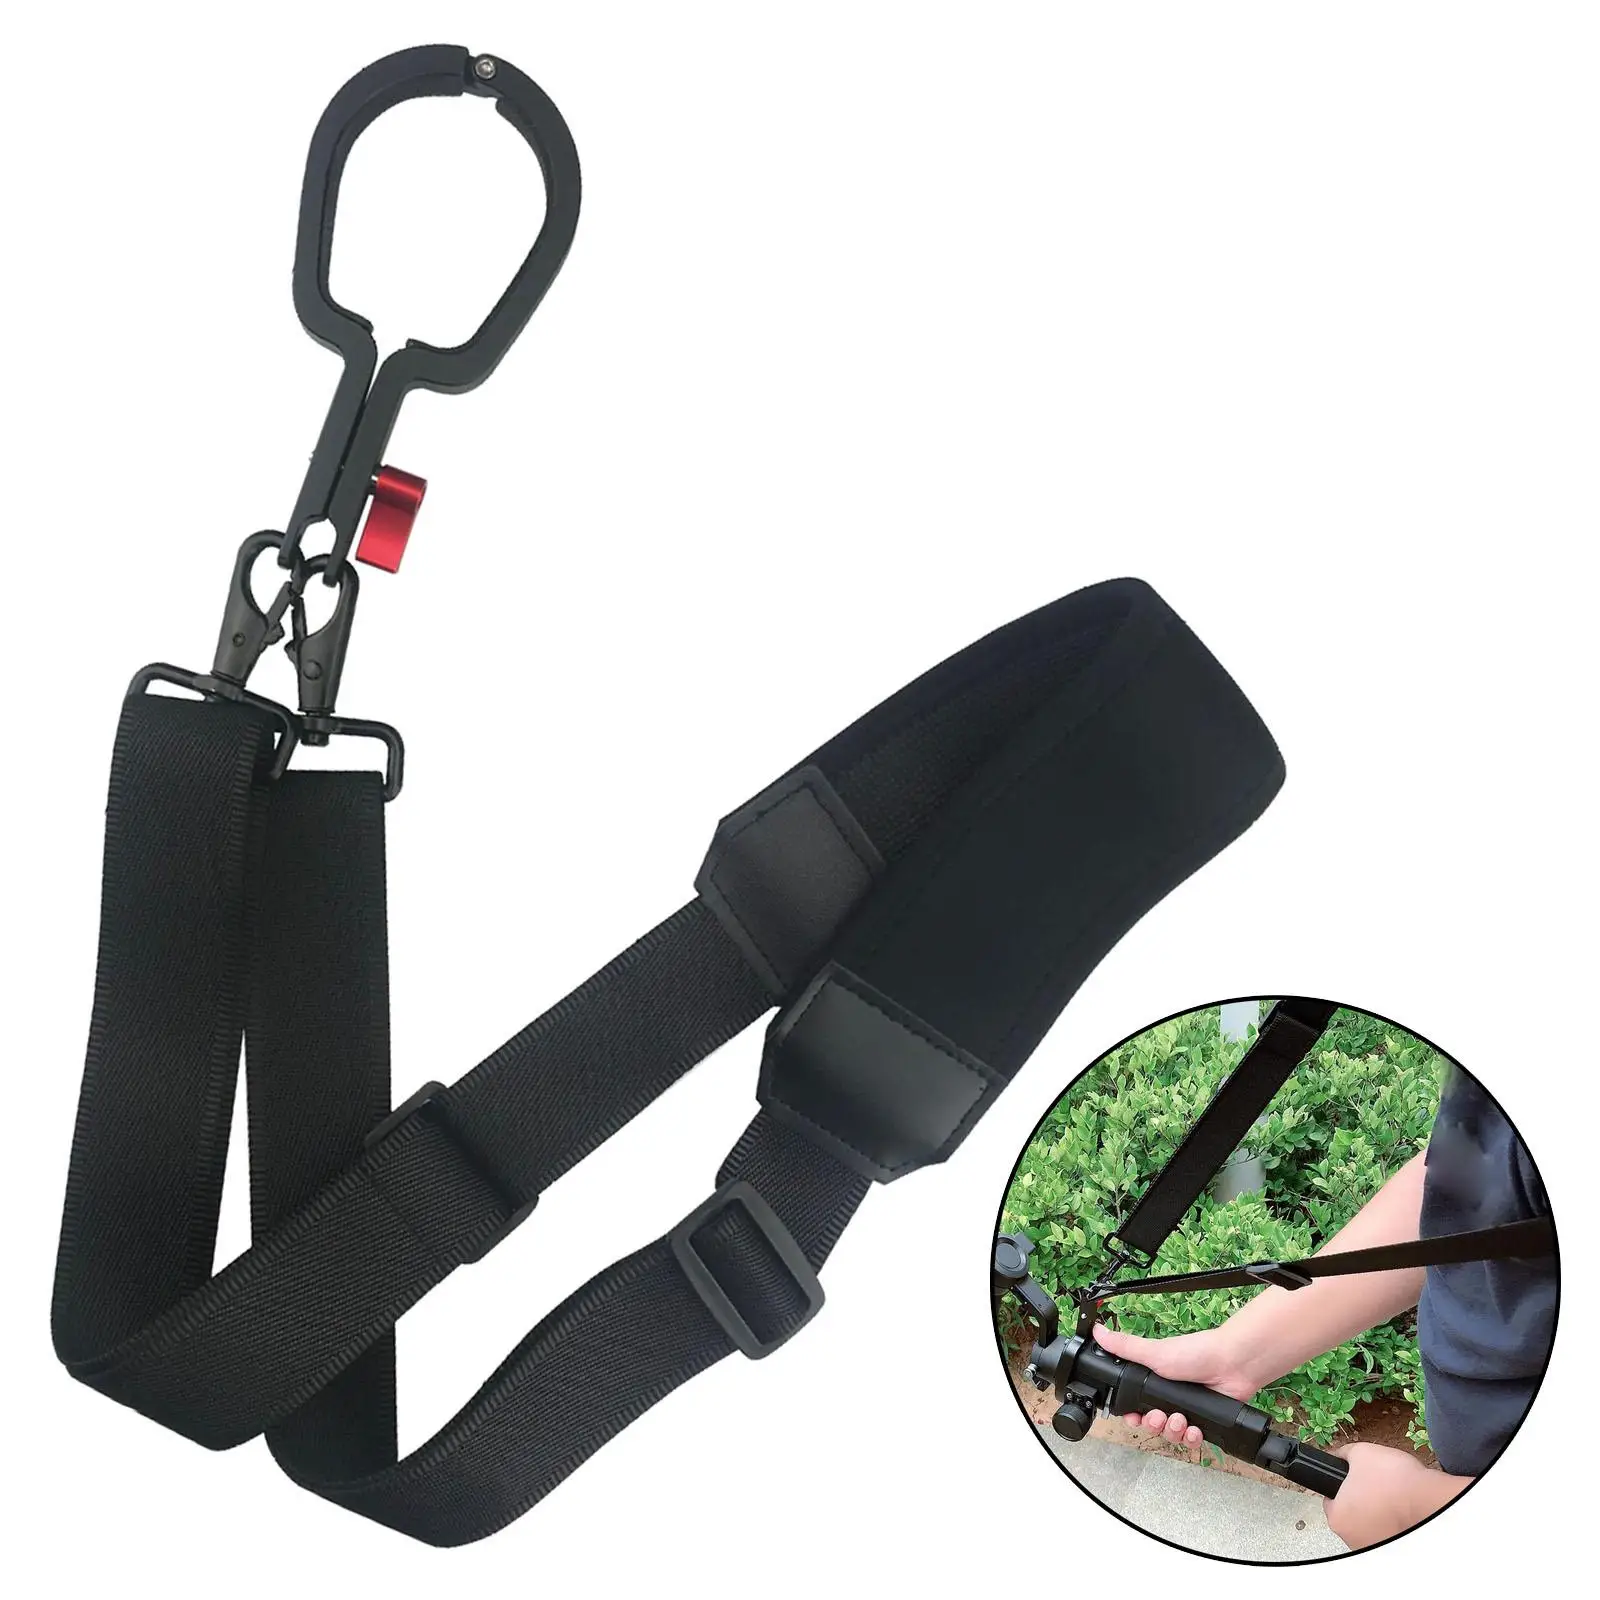 Handheld Stabilizer Hanging Strap Buckle Neck Shoulder Strap Belt Rope Ballhead Belt Sling Clasp for DJI Ronin SC Non Slip